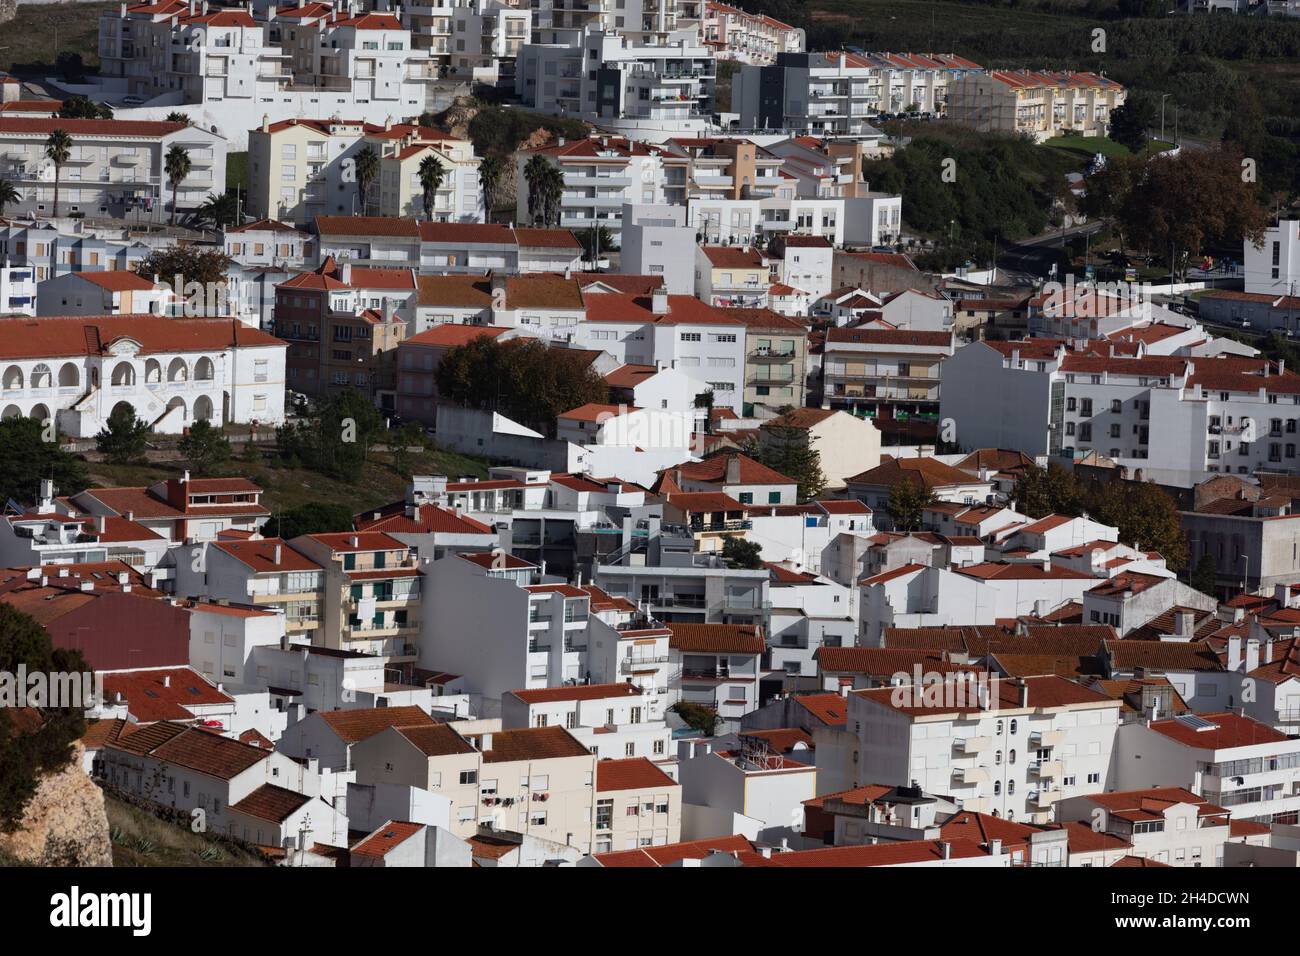 Architektur von Nazaré Portugal. Dichte Häuserstruktur. Weiße Häuser, rote Dächer Stock Photo